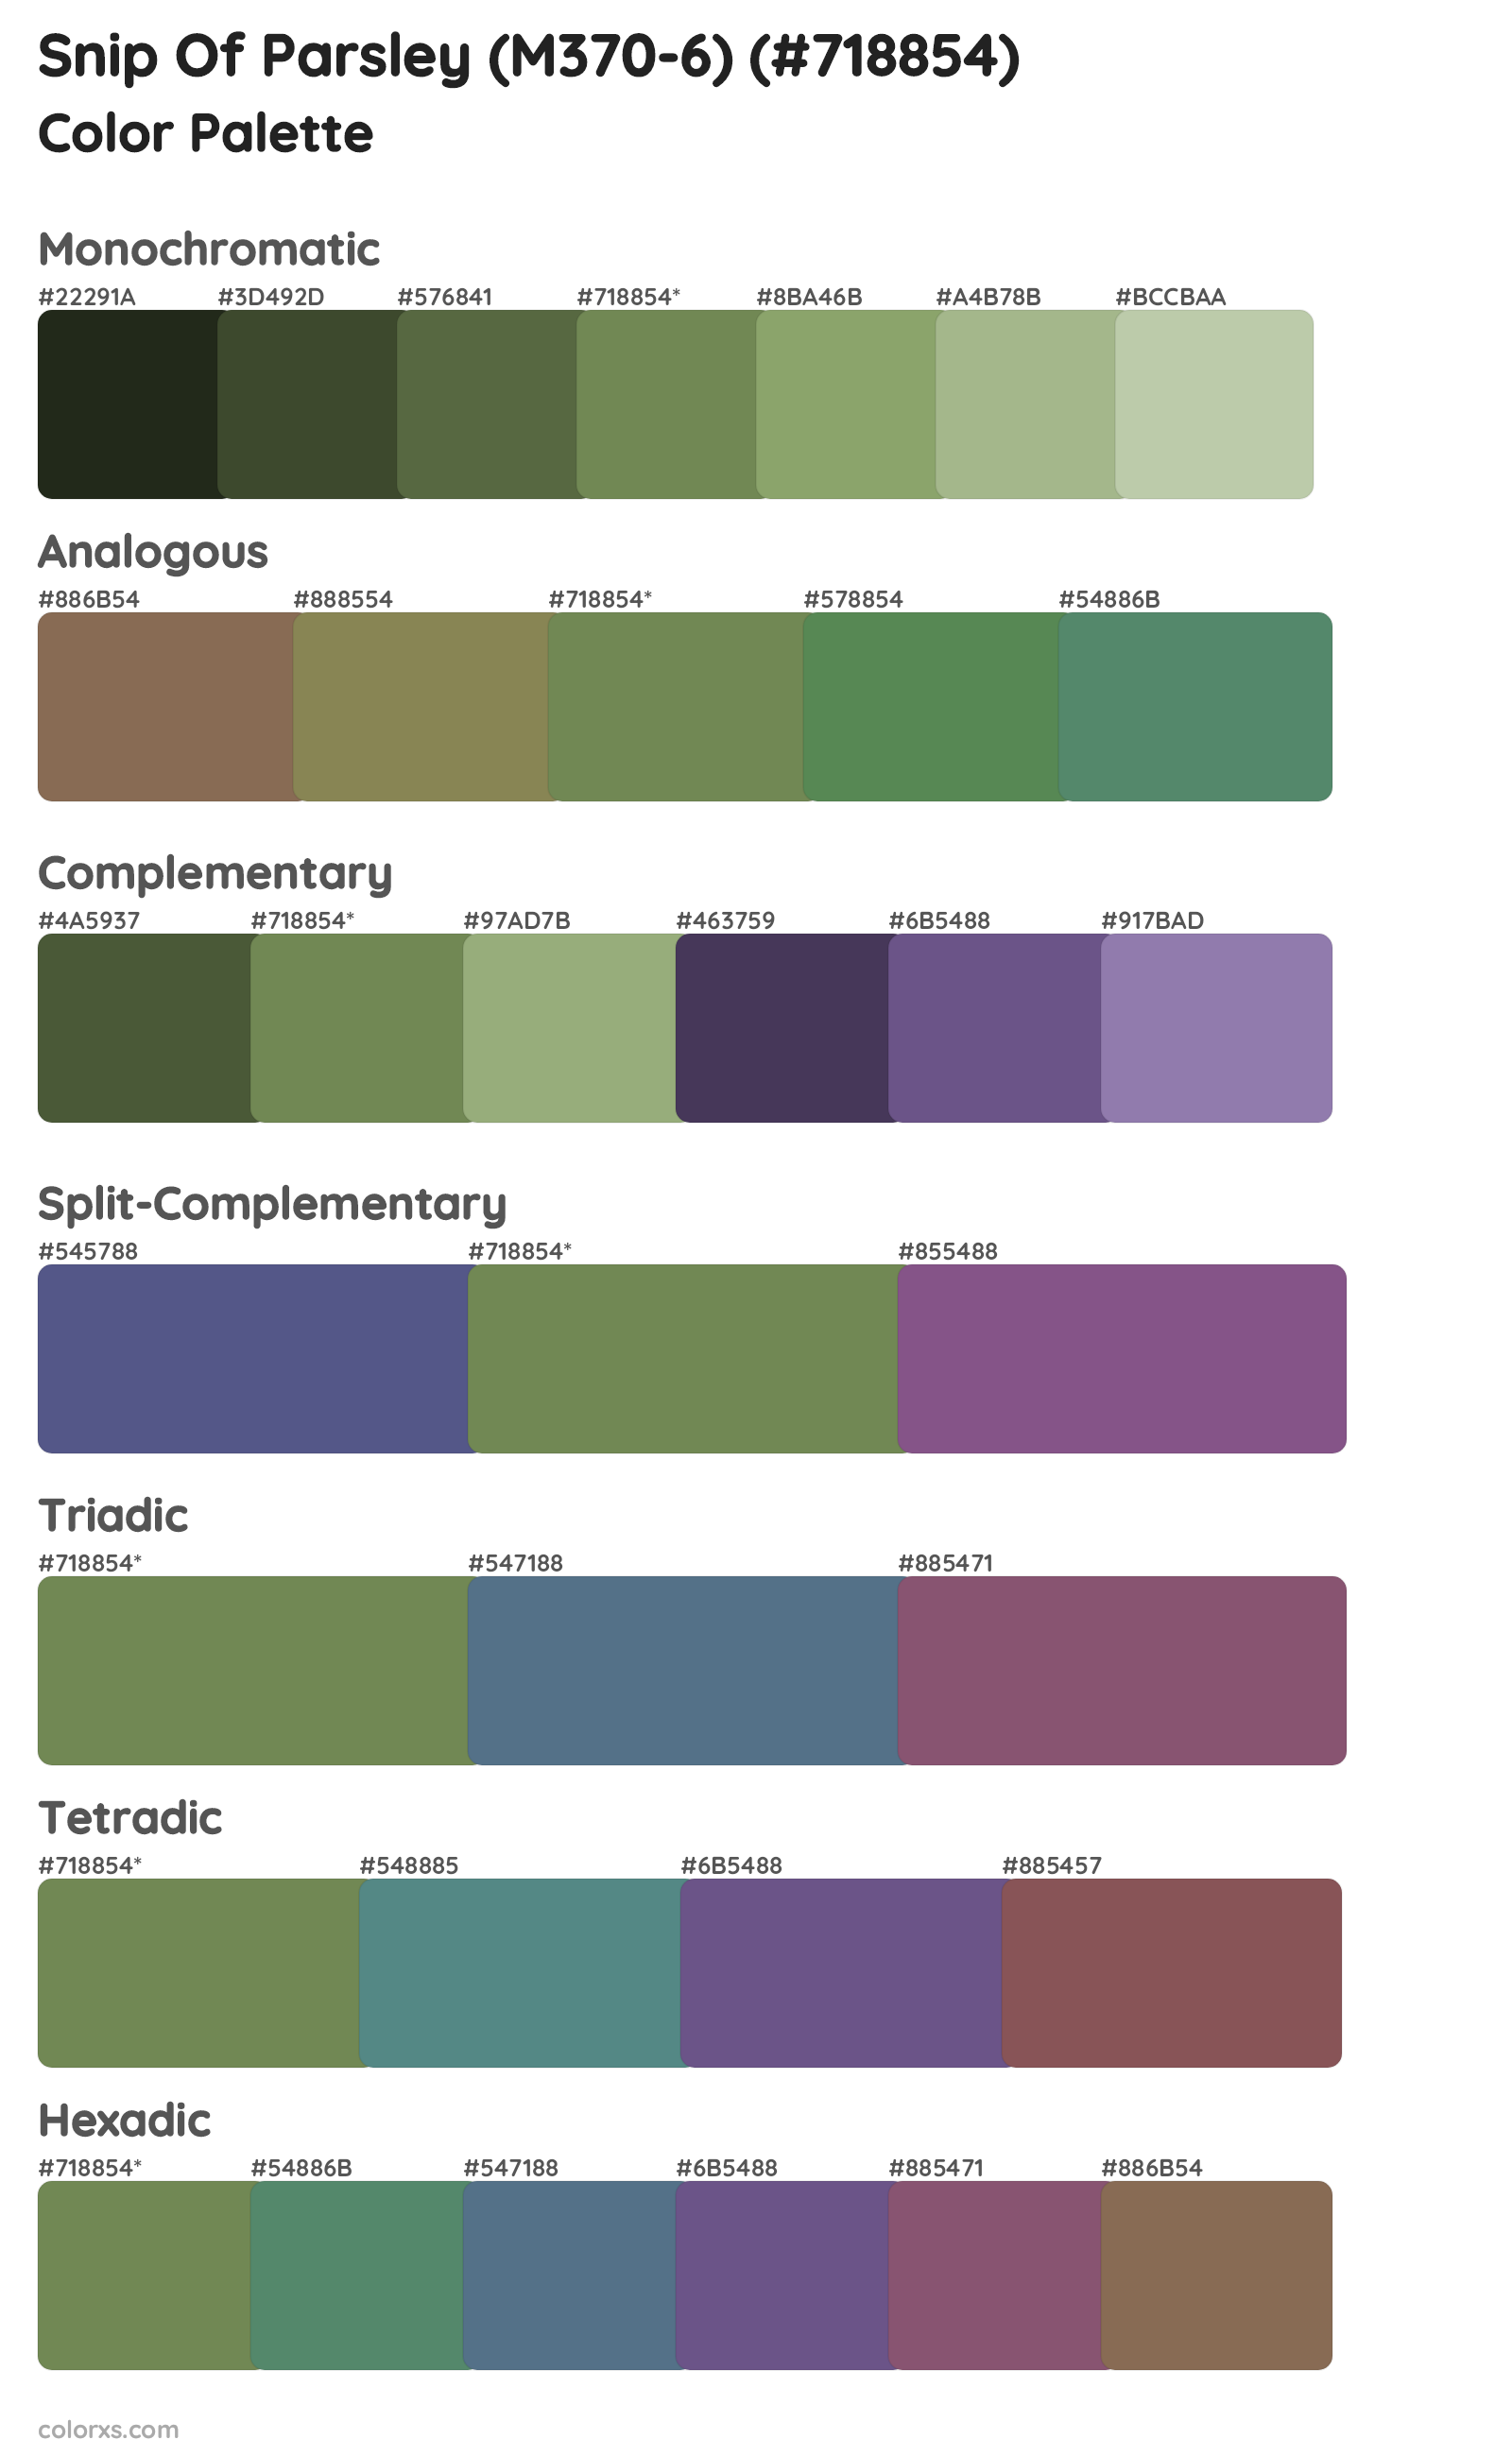 Snip Of Parsley (M370-6) Color Scheme Palettes